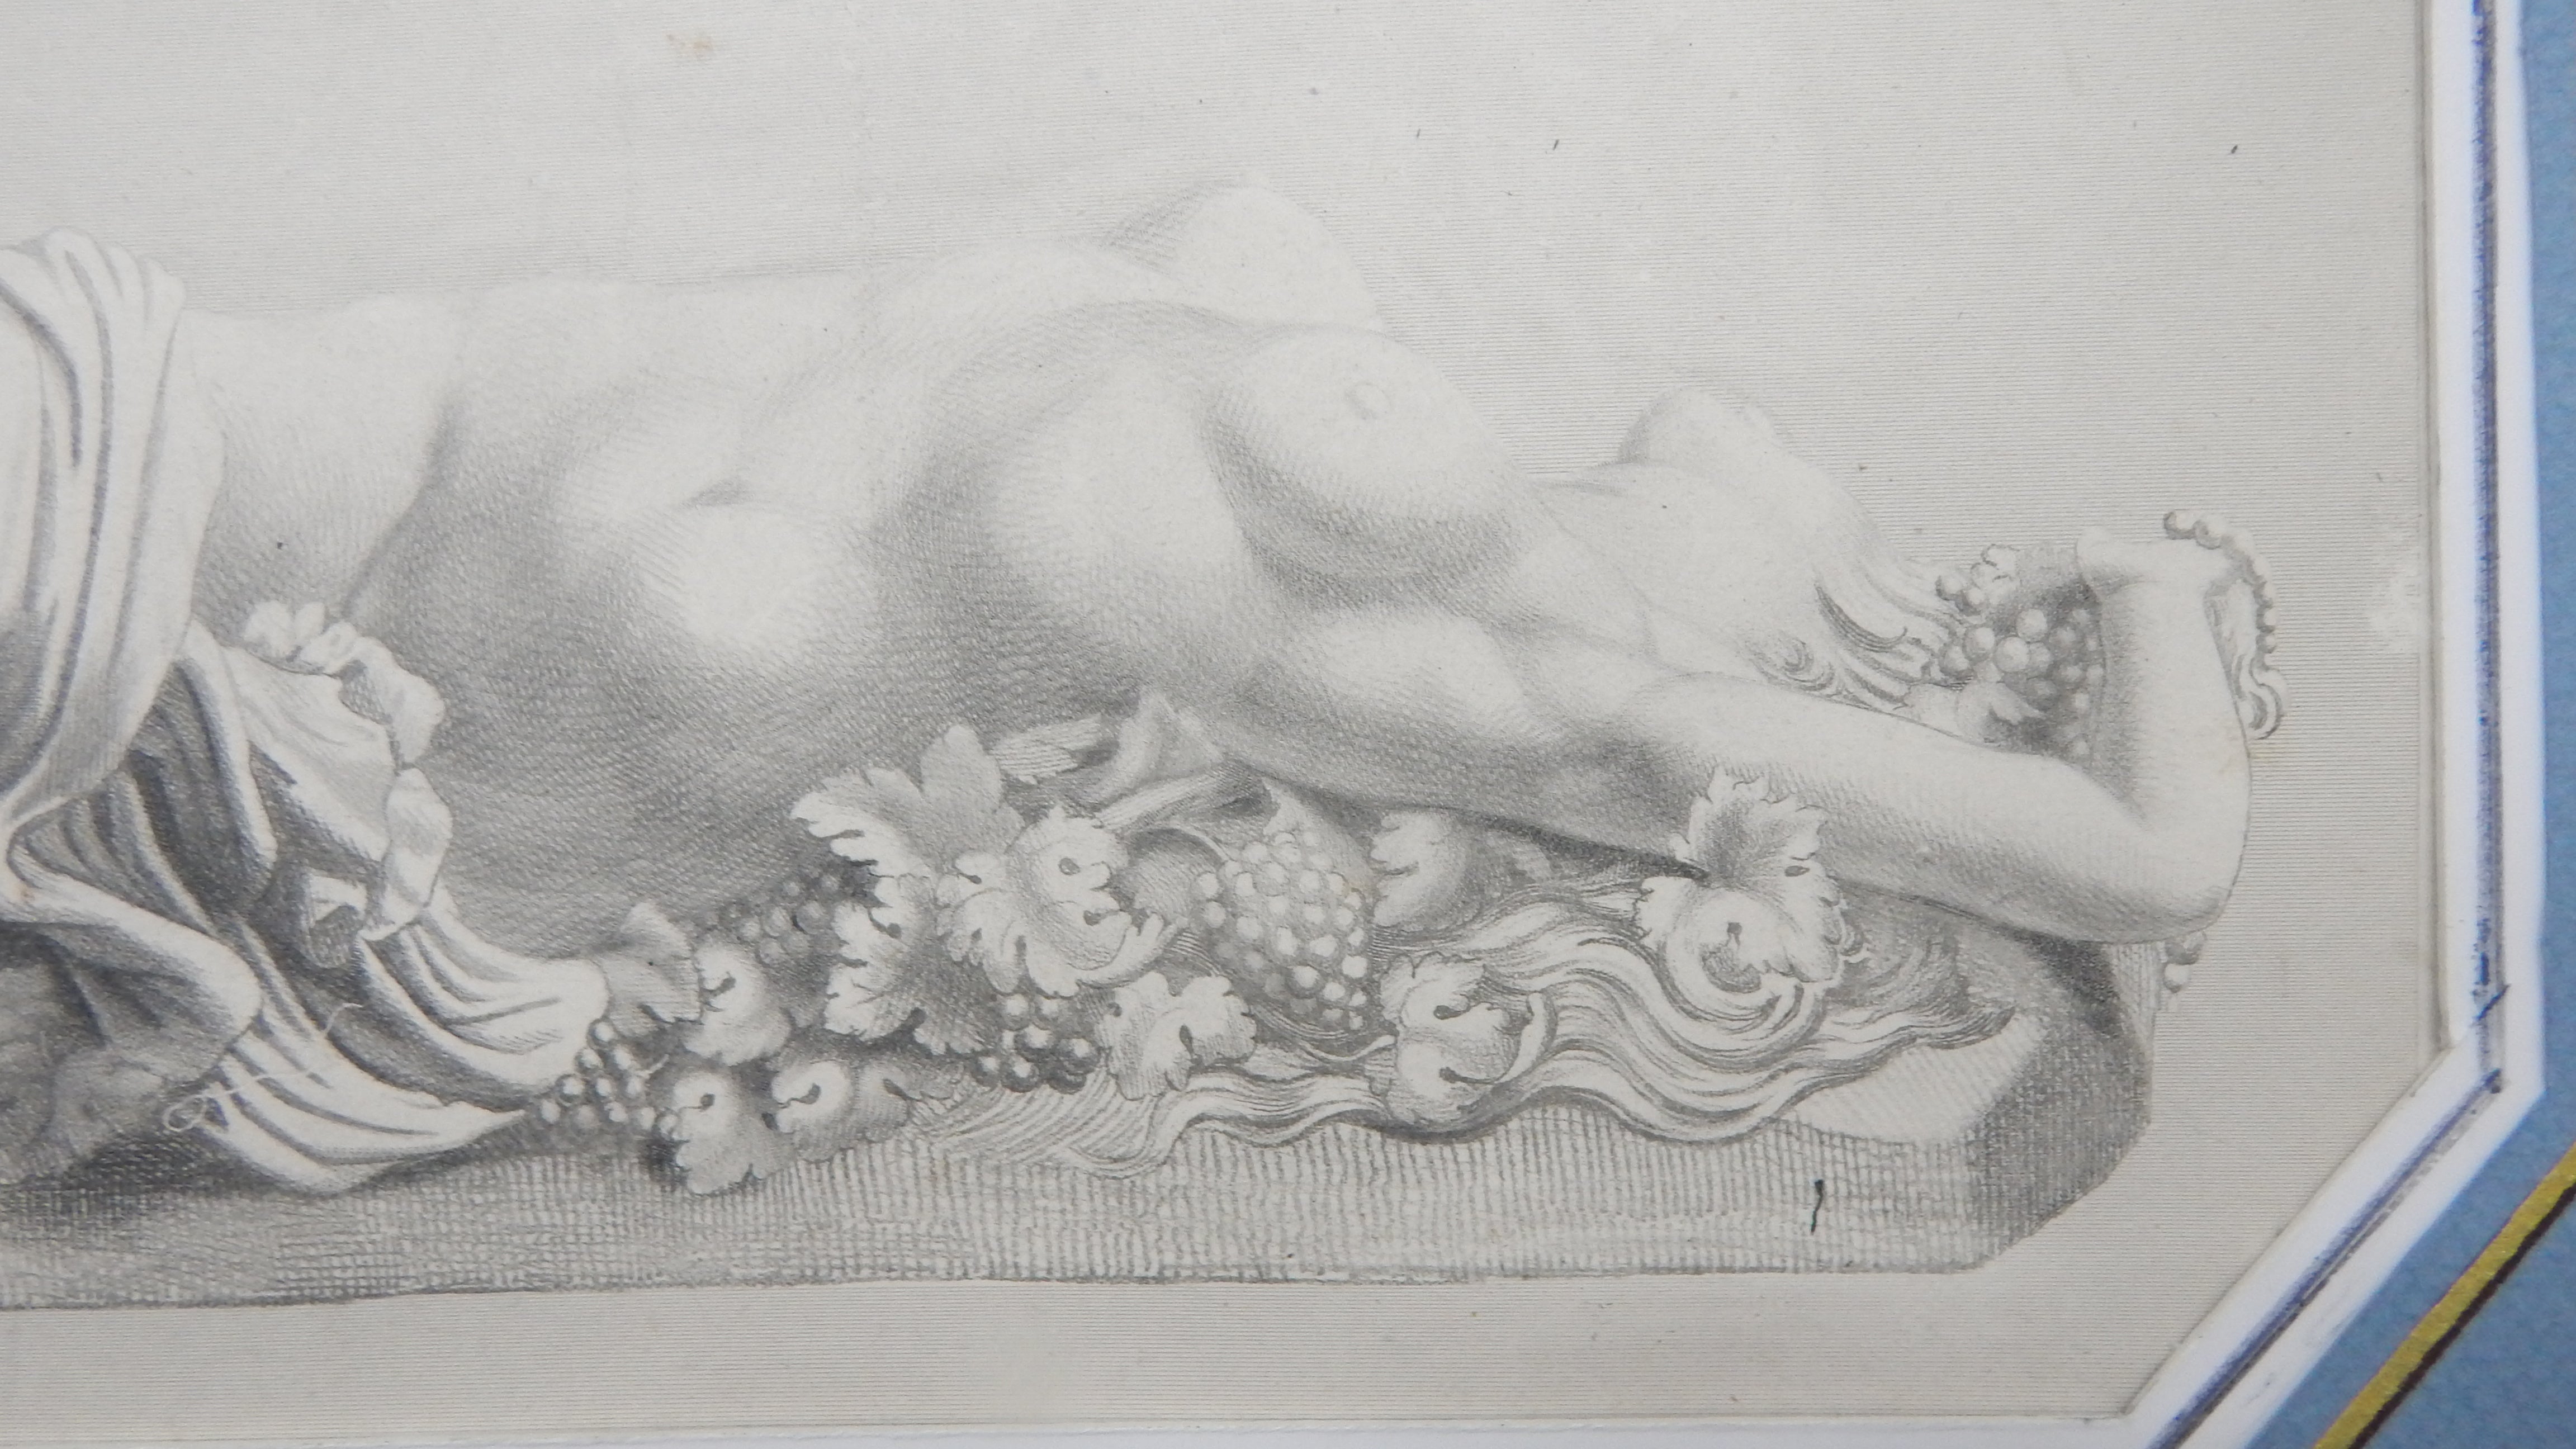 Incisione "La baccante" da Emile Pierre Metzmacher 1848